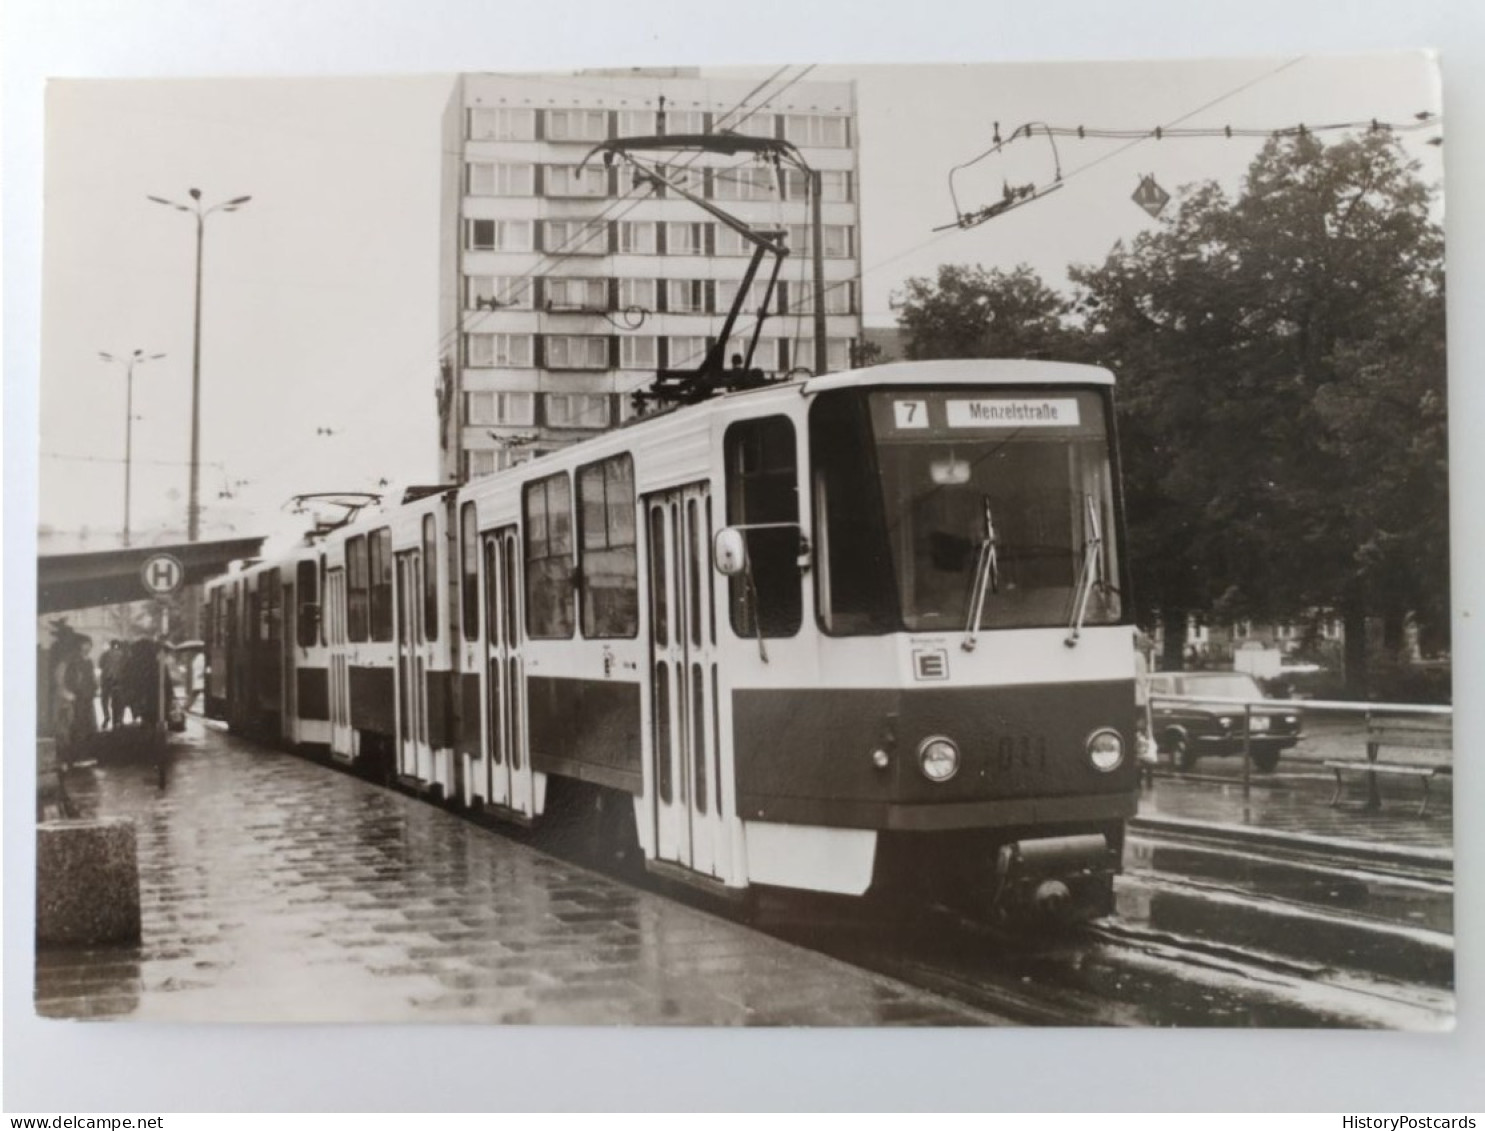 Potsdam, Tatra-Strassenbahn Der Linie 7 Am Platz Der Einheit, Tram, 1986 - Potsdam